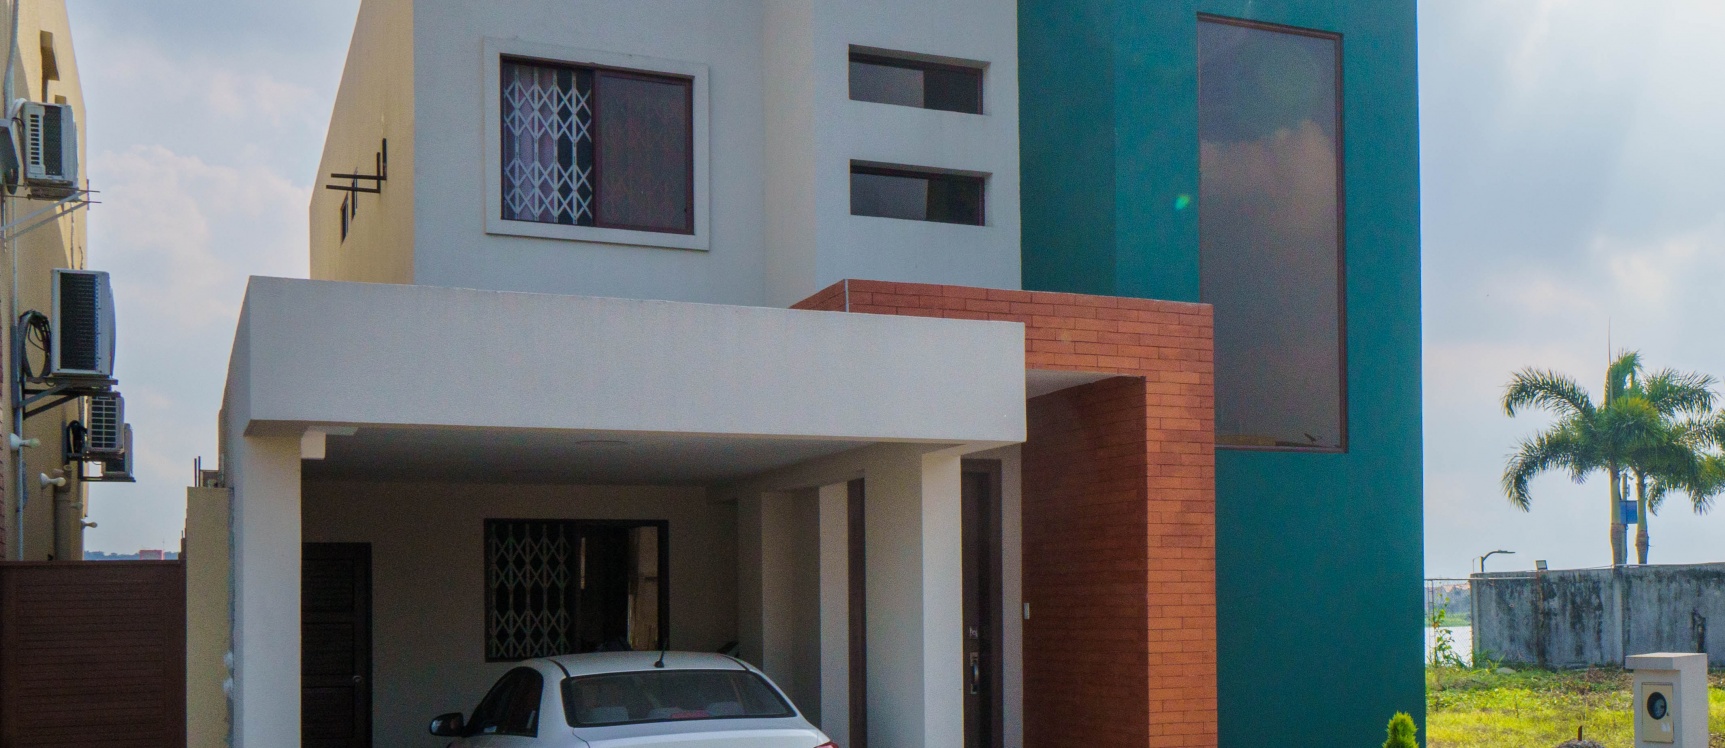 GeoBienes - Casa en venta ubicada en la Urbanización Bali, Vista al río - Plusvalia Guayaquil Casas de venta y alquiler Inmobiliaria Ecuador